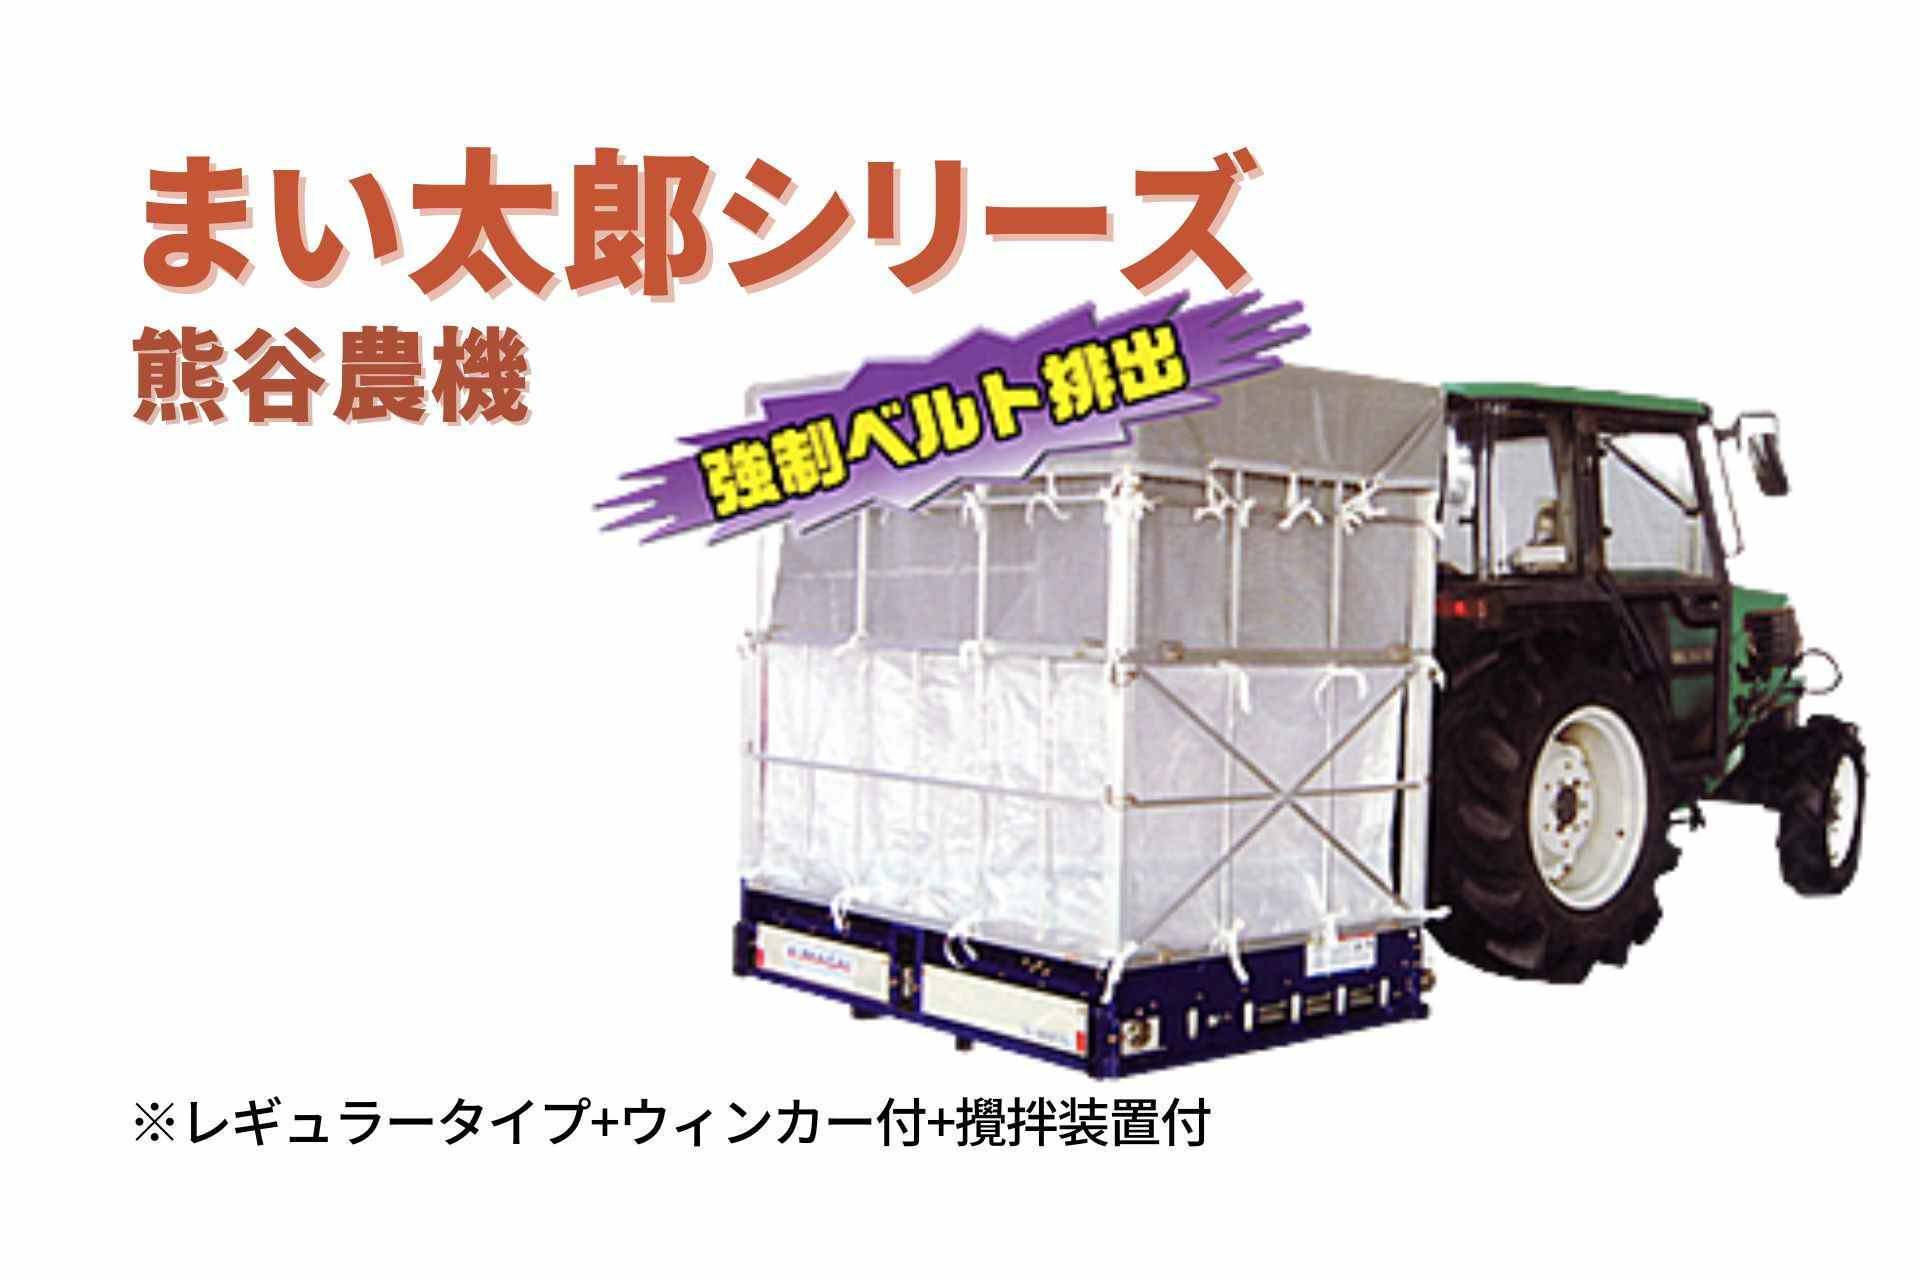 籾殻散布機 まい太郎 レギュラータイプ ウィンカー付 攪拌装置付 MTA-40RW 熊谷農機